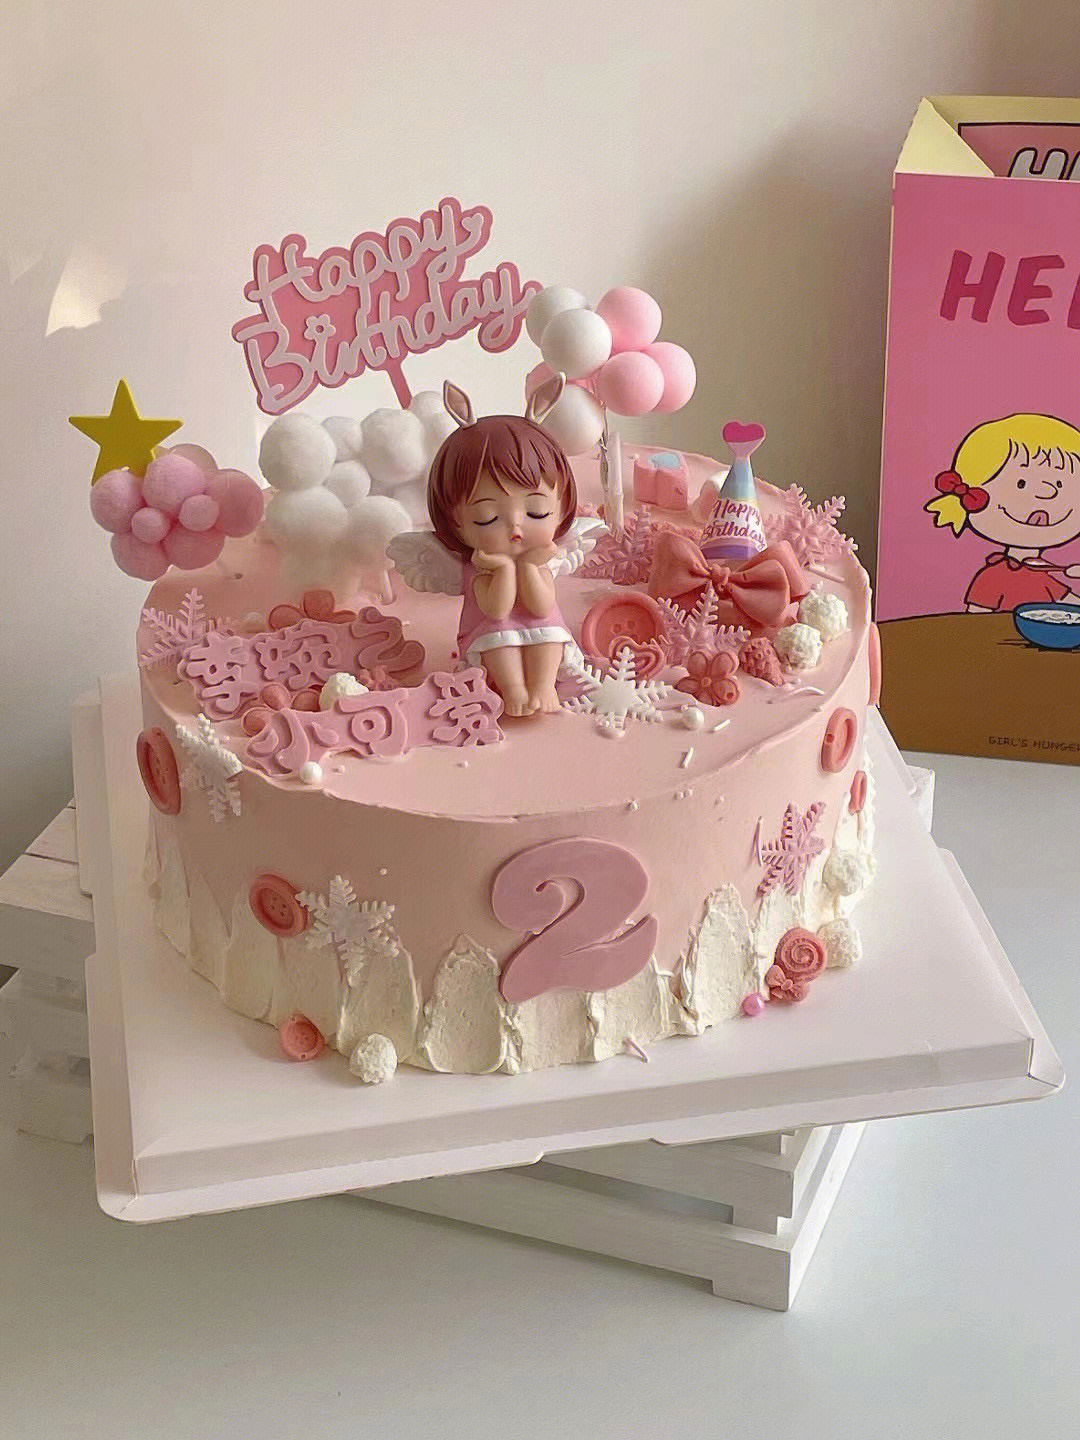 小公主的生日蛋糕一定要粉粉嫩嫩的